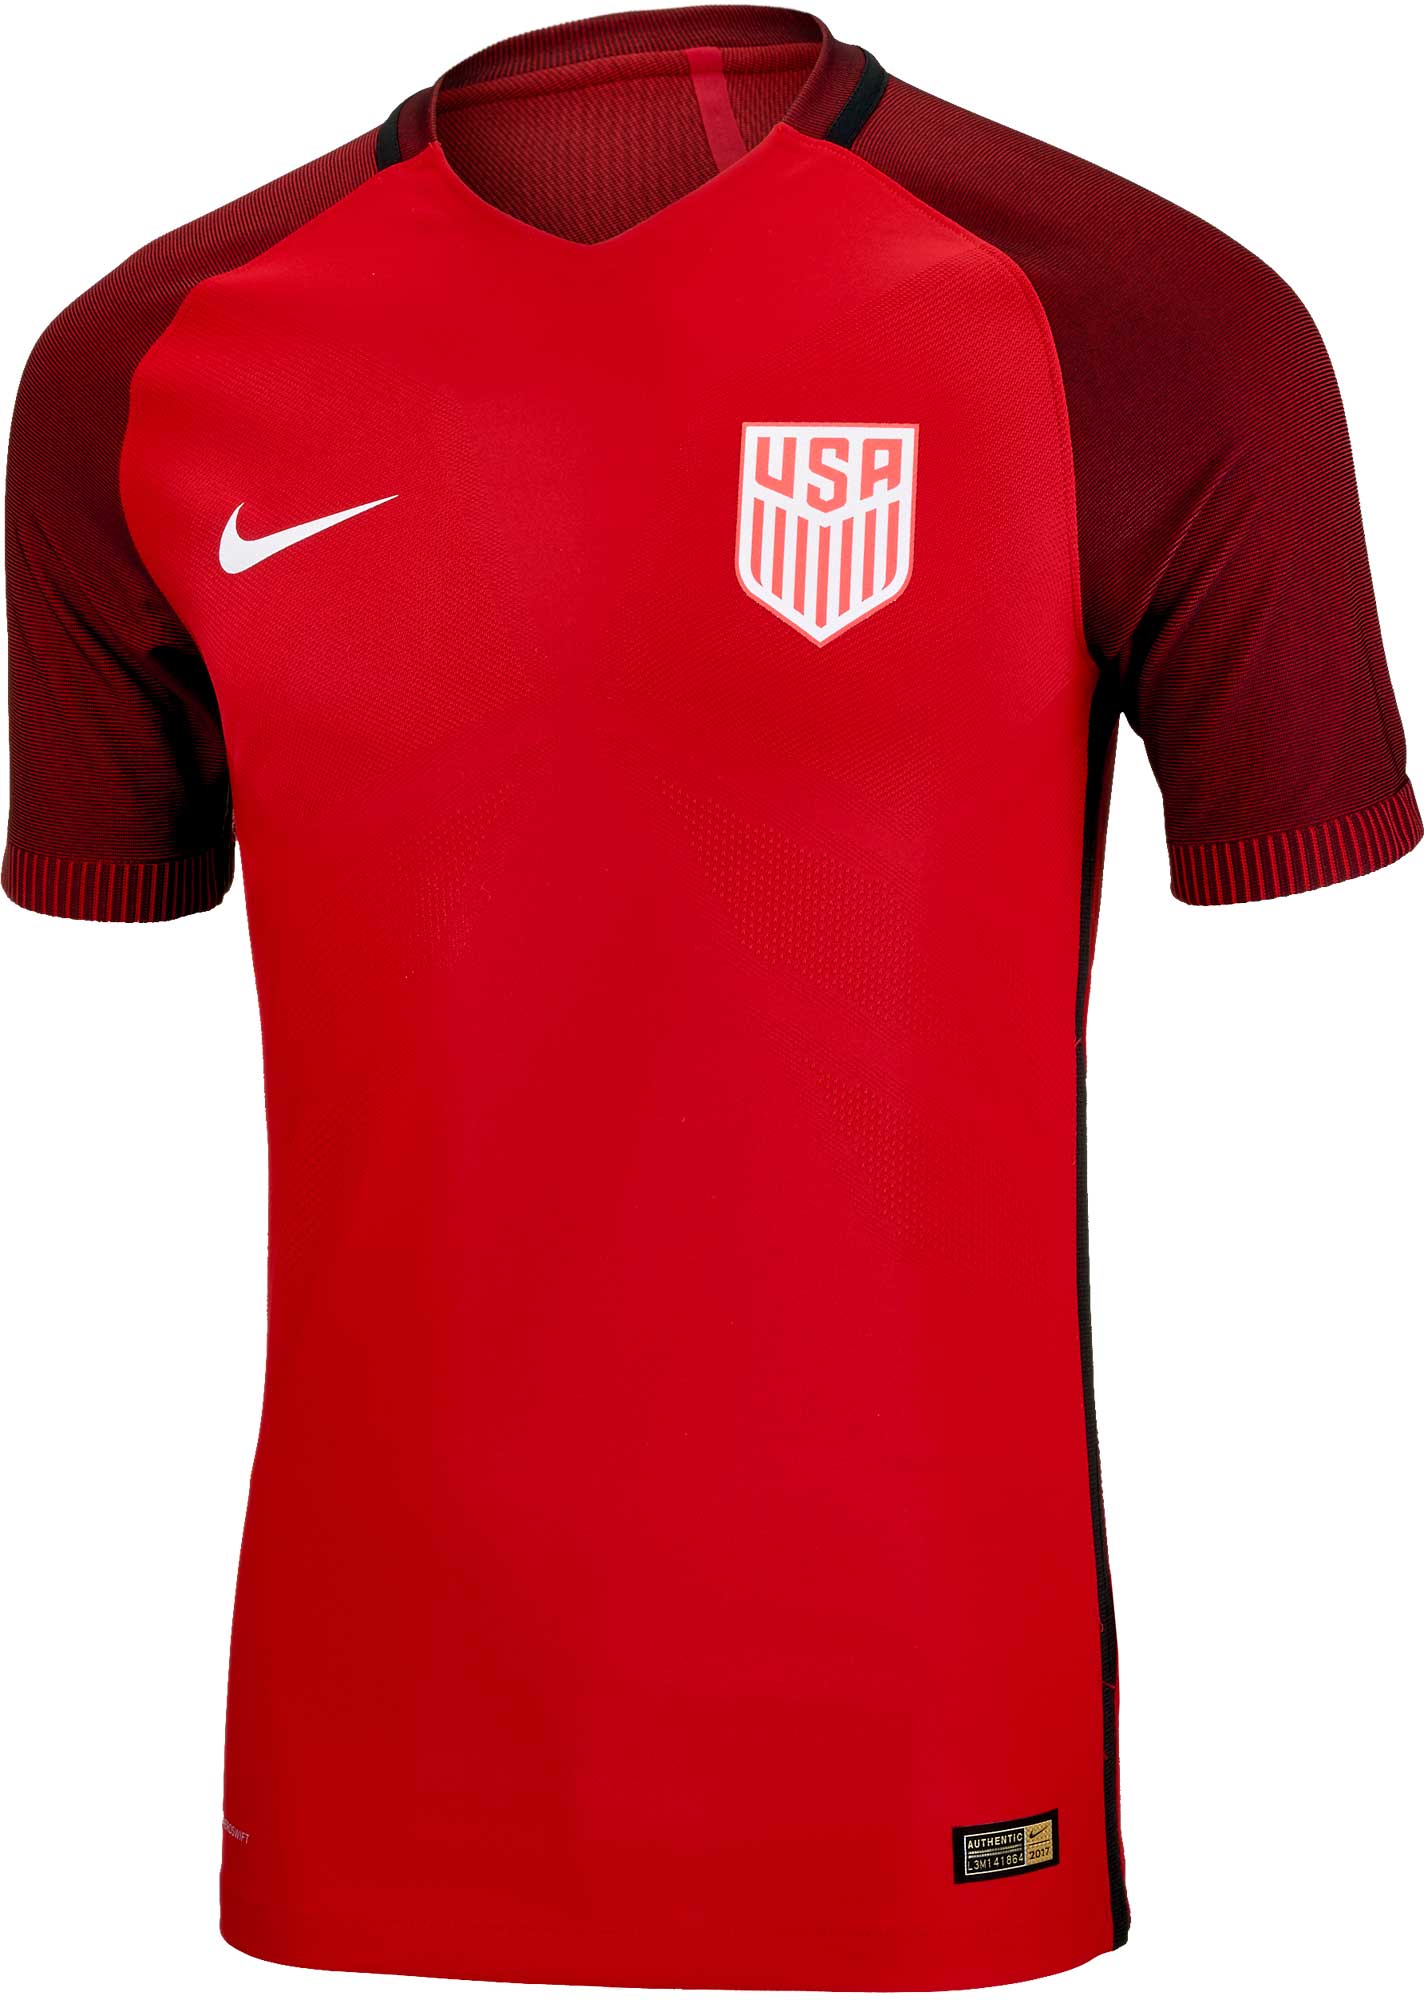 dispersión Hacia arriba Adelante Nike USA 3rd Match Jersey - 2016 USA Soccer Jerseys